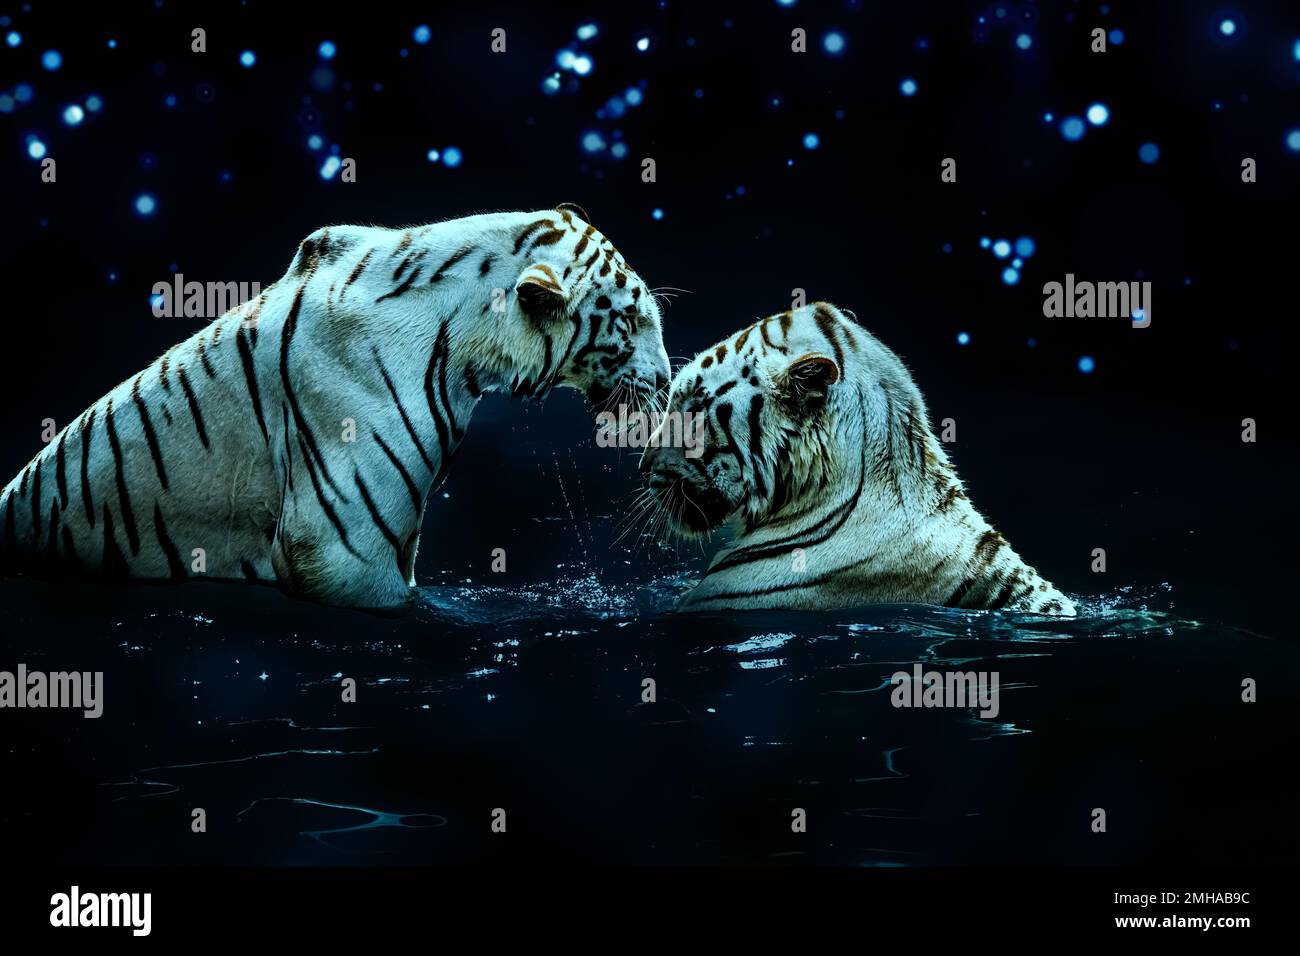 L'art numérique d'un couple de tigres blancs romantiques dans l'eau sous une nuit étoilée. Même les animaux les plus majestueux connaissent l'amour. Banque D'Images